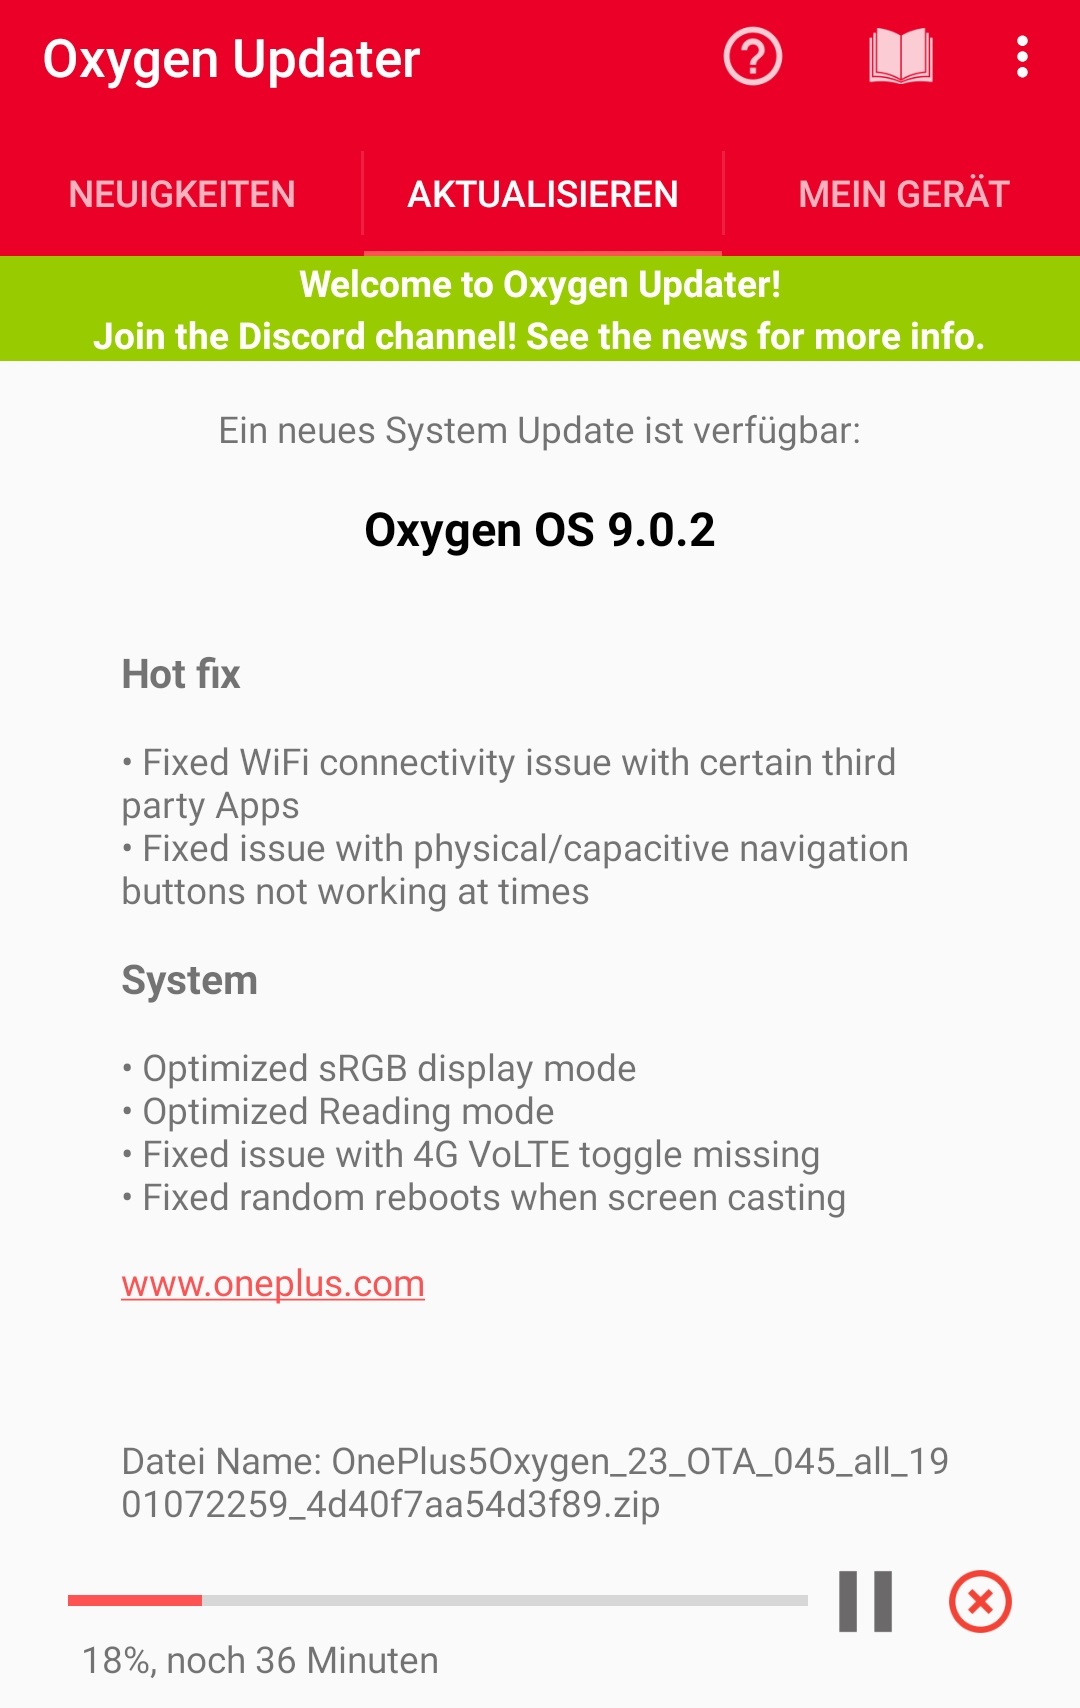 Oneplus 5 - OxygenOS 9.0.2